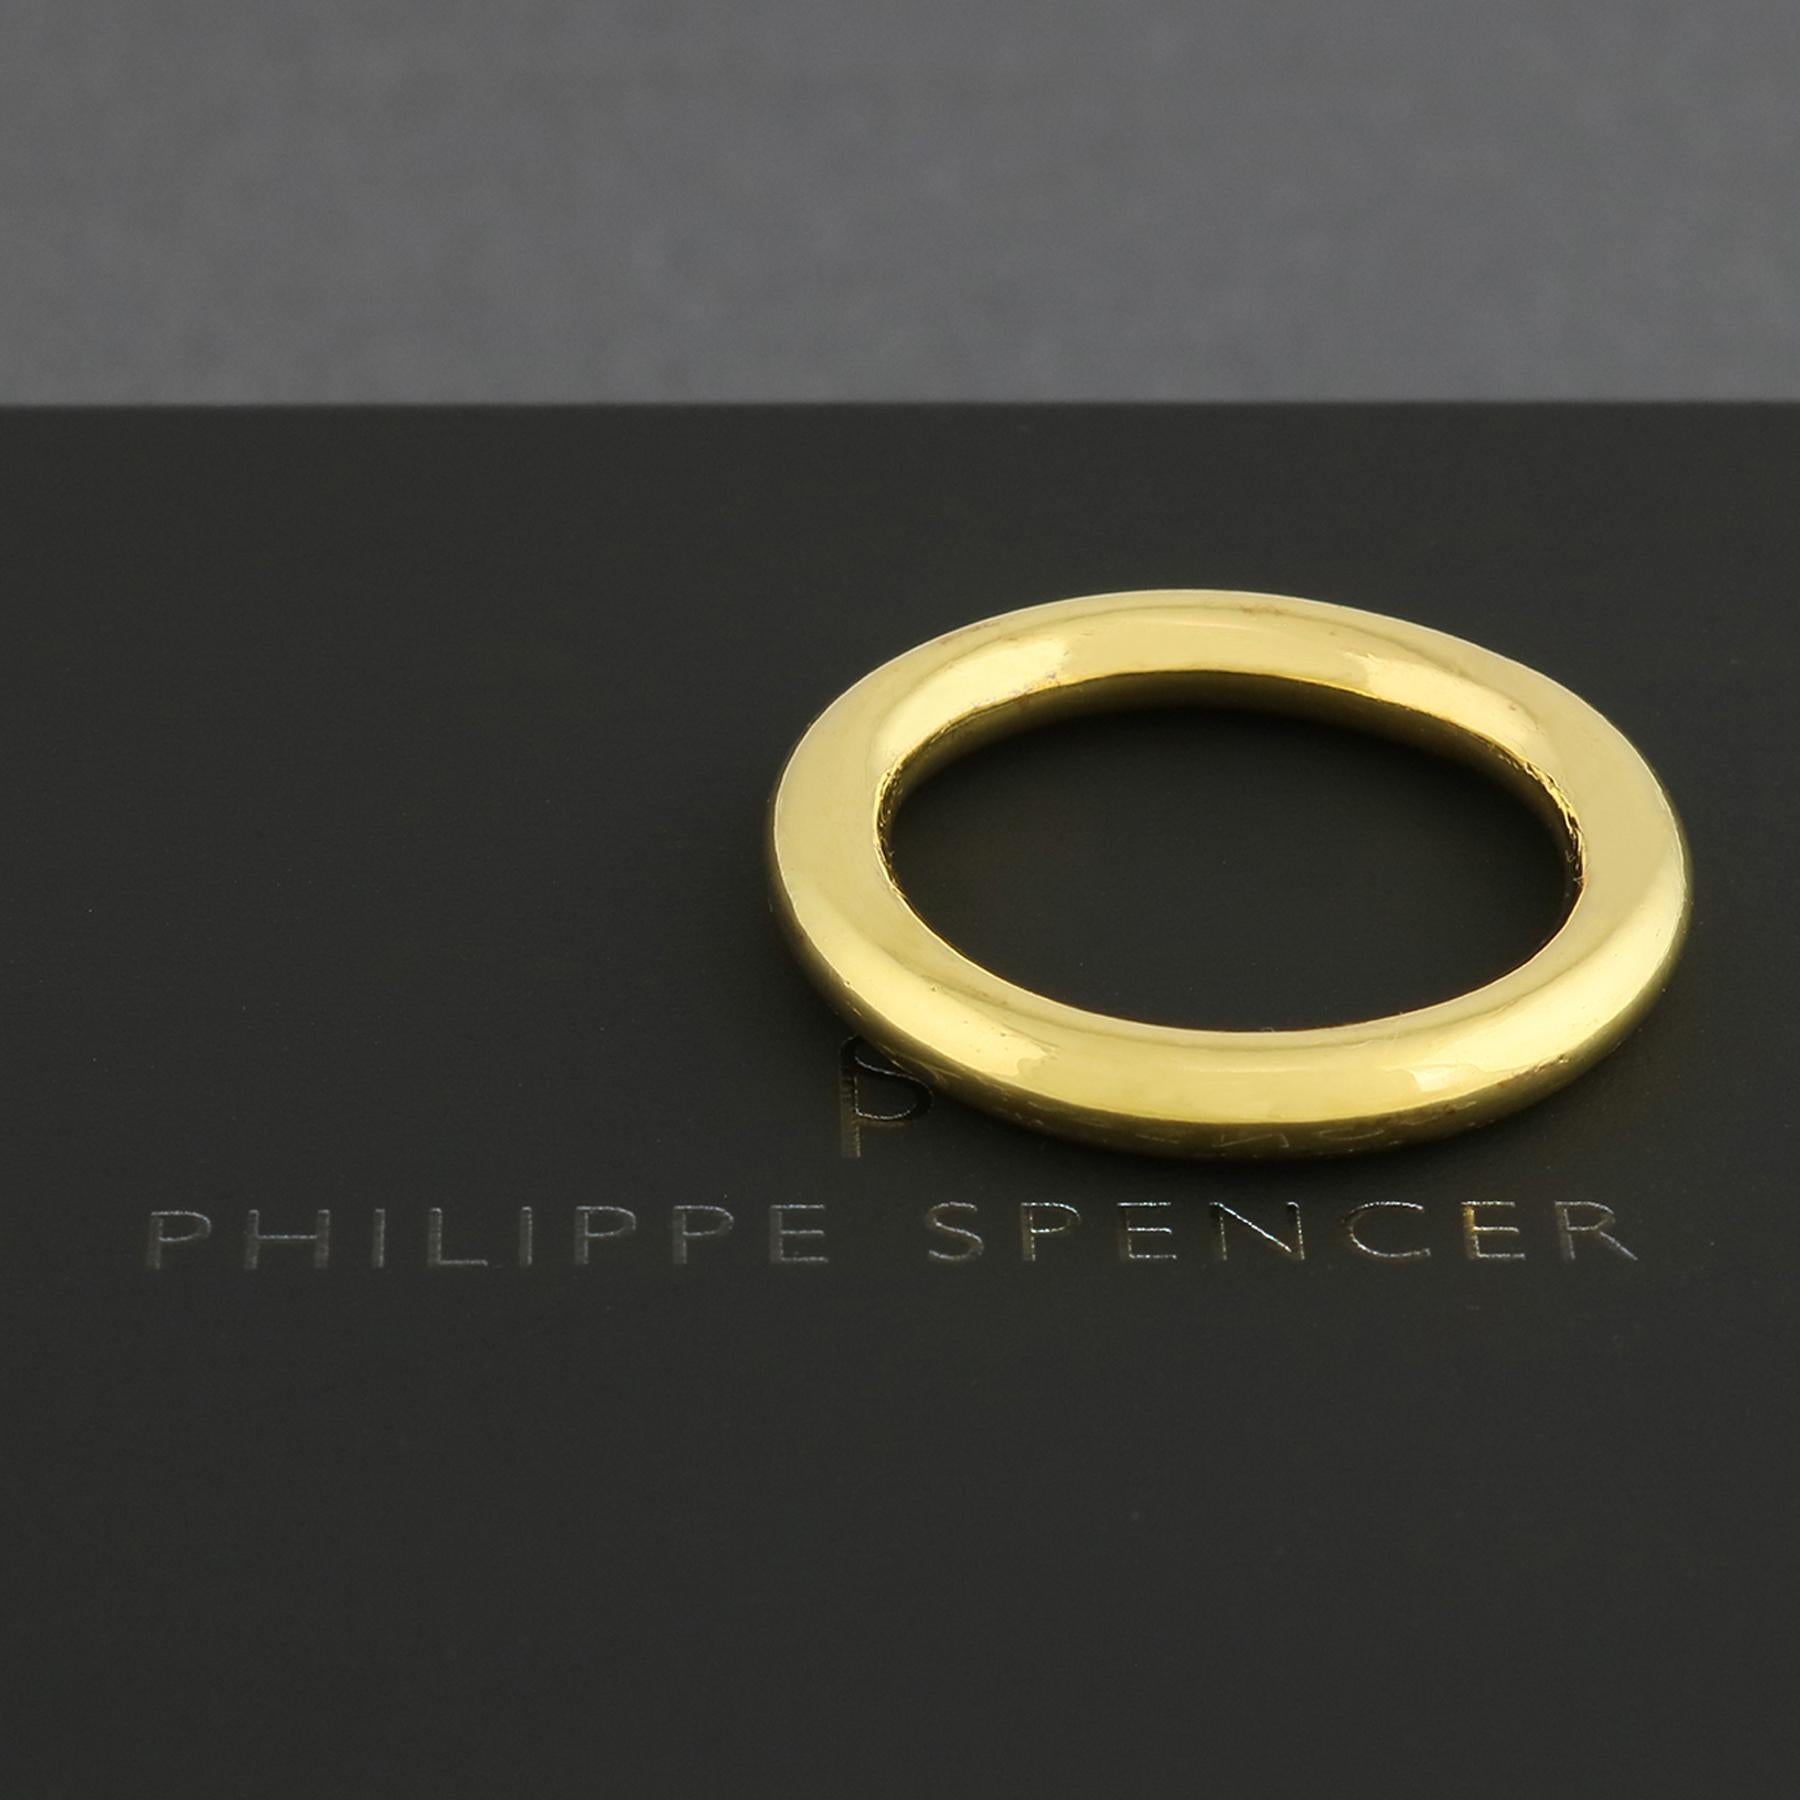 En vente :  Bague ronde organique PHILIPPE SPENCER en or massif 20 carats forgé à la main 3,8 mm 2